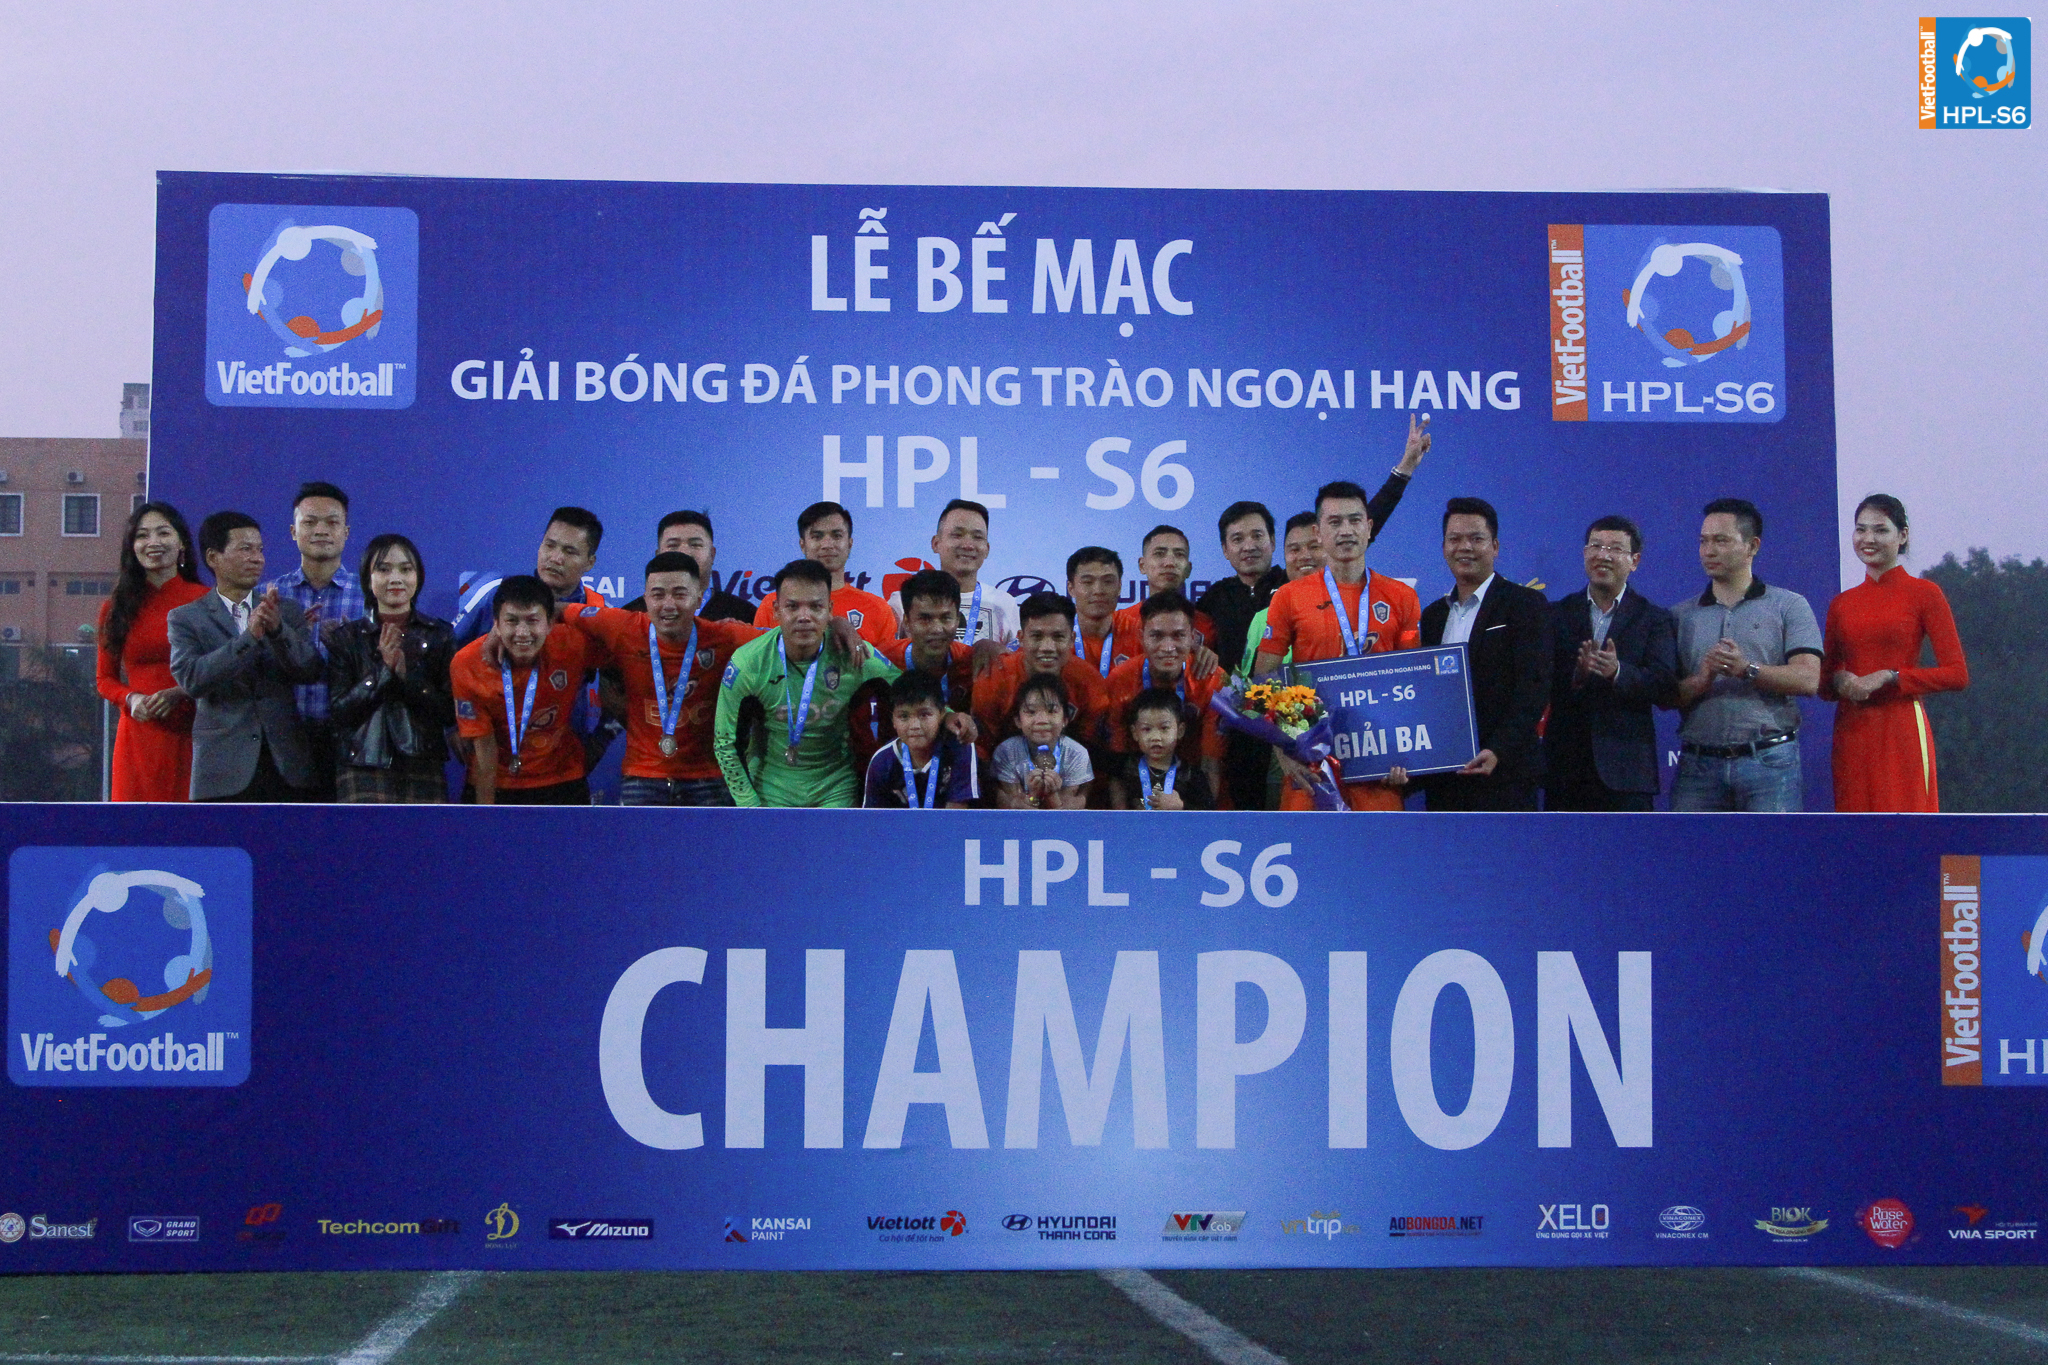 Hồng Sâm BIOK - Quán Quân giải bóng đá HPL S6